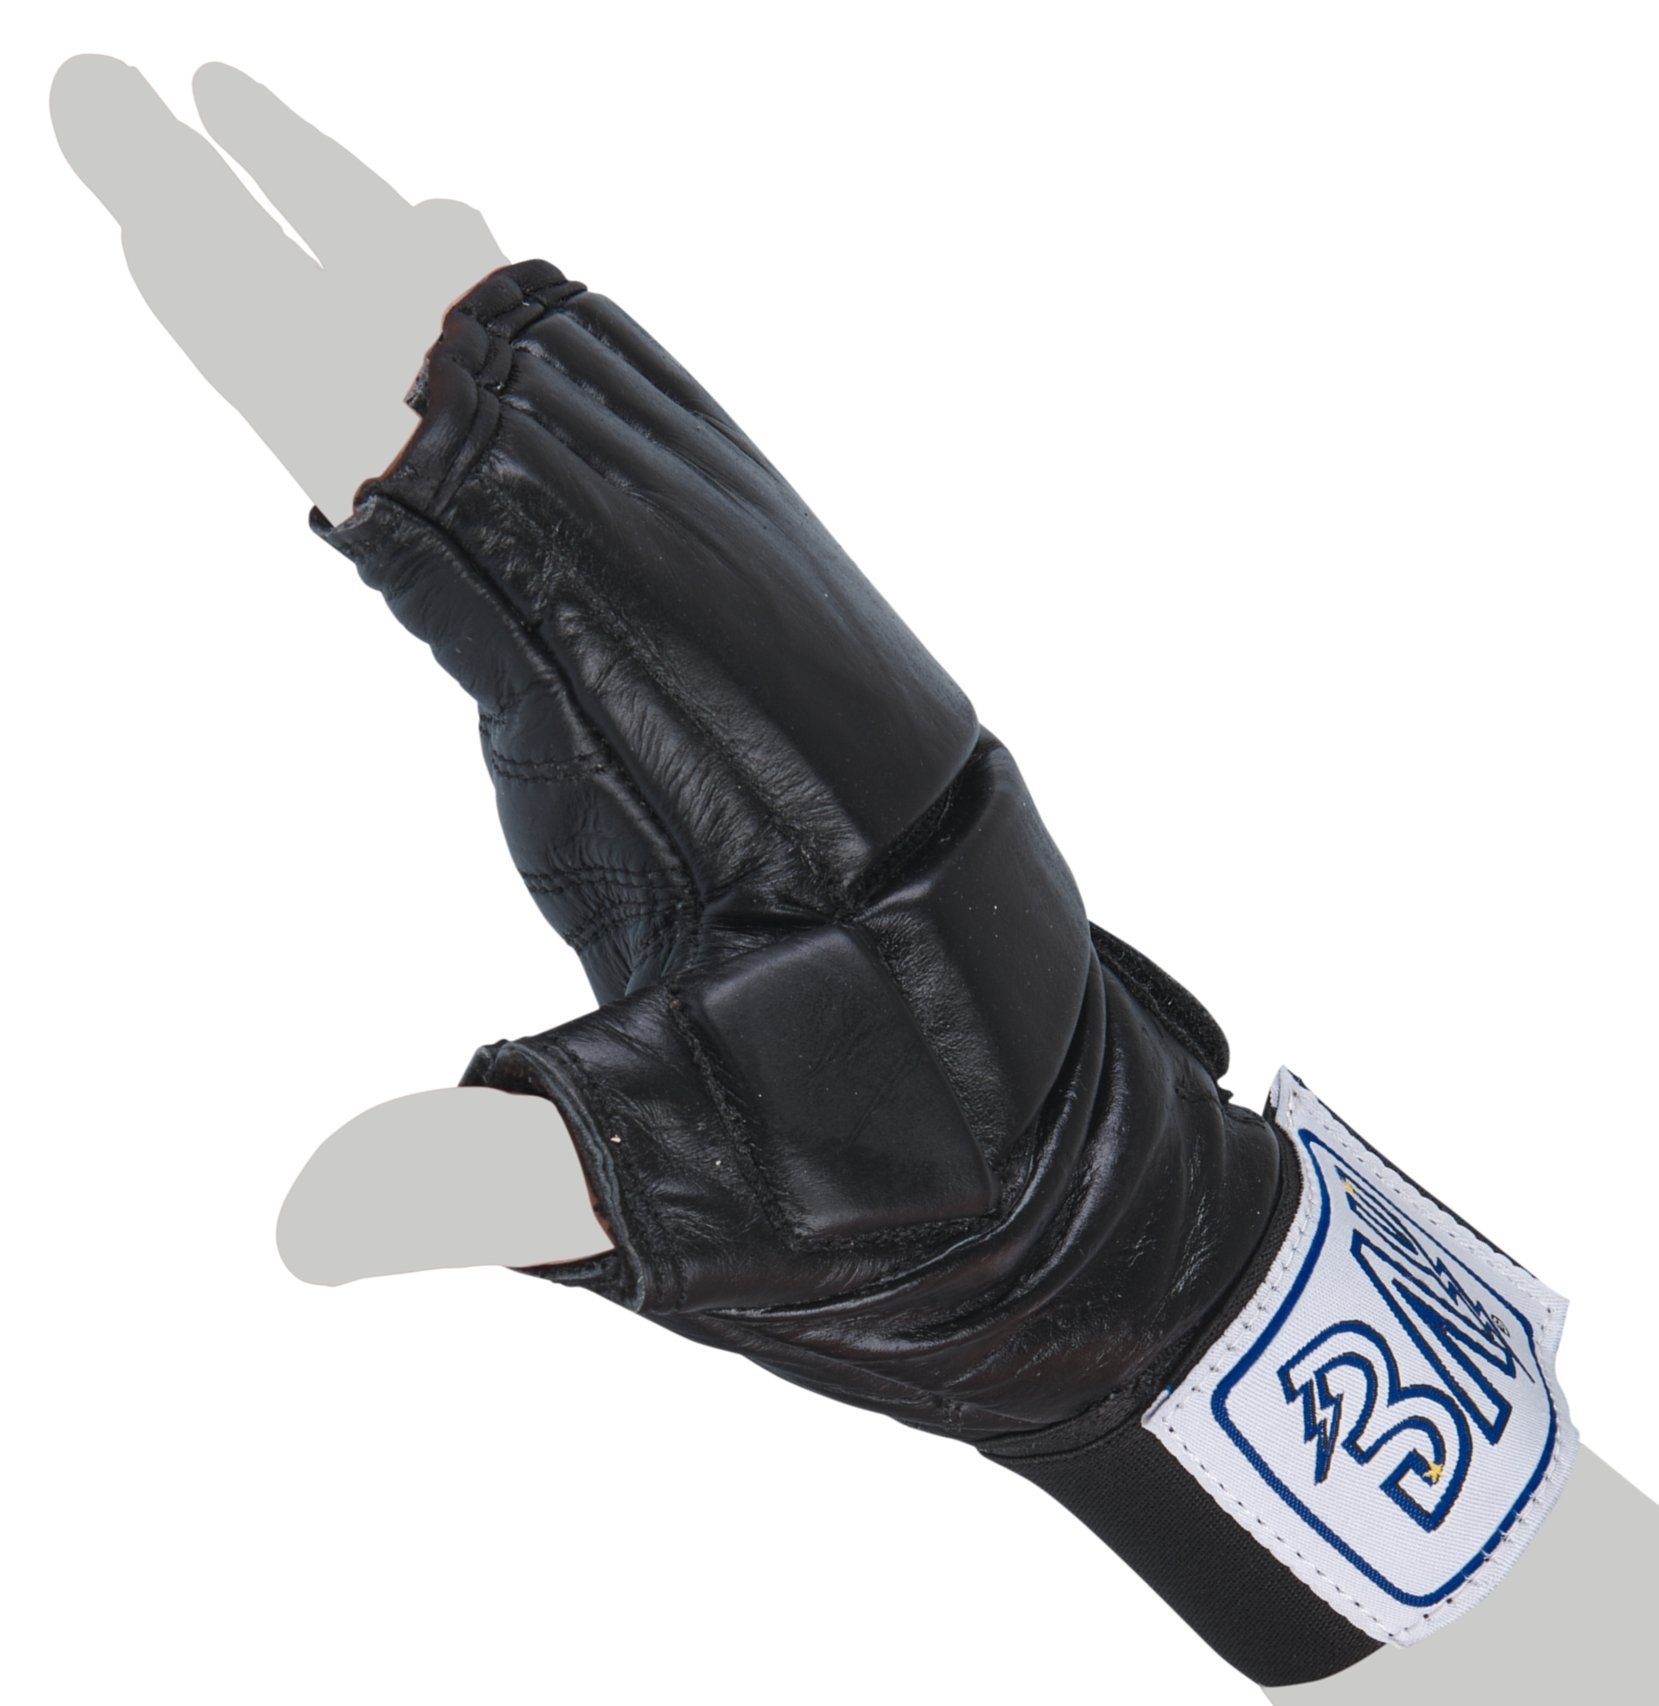 BAY-Sports Sandsackhandschuhe Leder XL S Sandsack Pad Gel Gel Boxsack Boxhandschuhe Handschut, Polsterung 